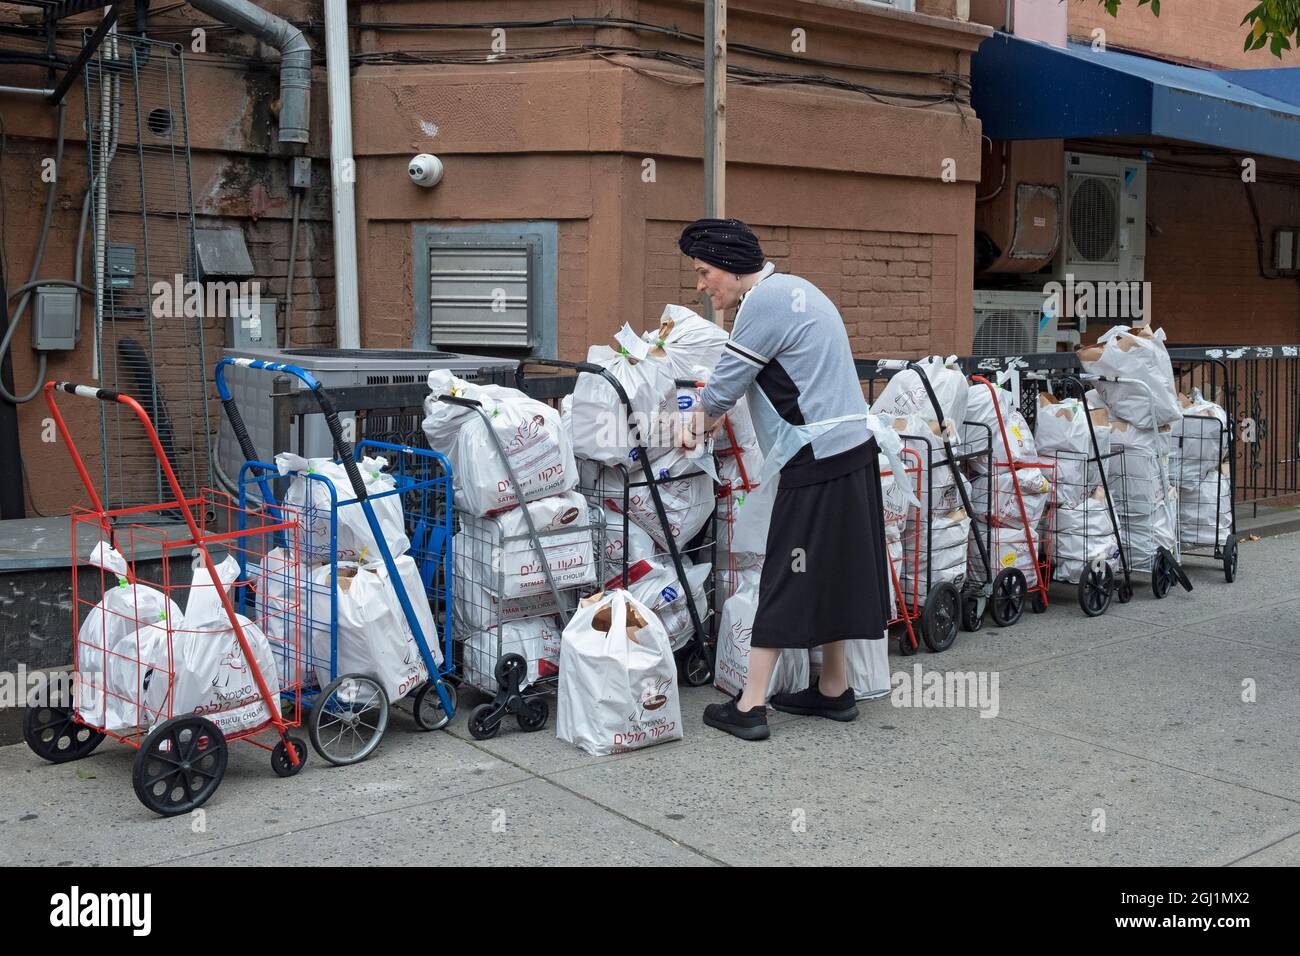 Ein Freiwilliger der orthodoxen jüdischen Gruppe von Satmar bereitet Lebensmittelpakete zu, die an Bedürftige und Menschen in Krankenhäusern, die eine koschere Mahlzeit benötigen, verteilt werden. Stockfoto